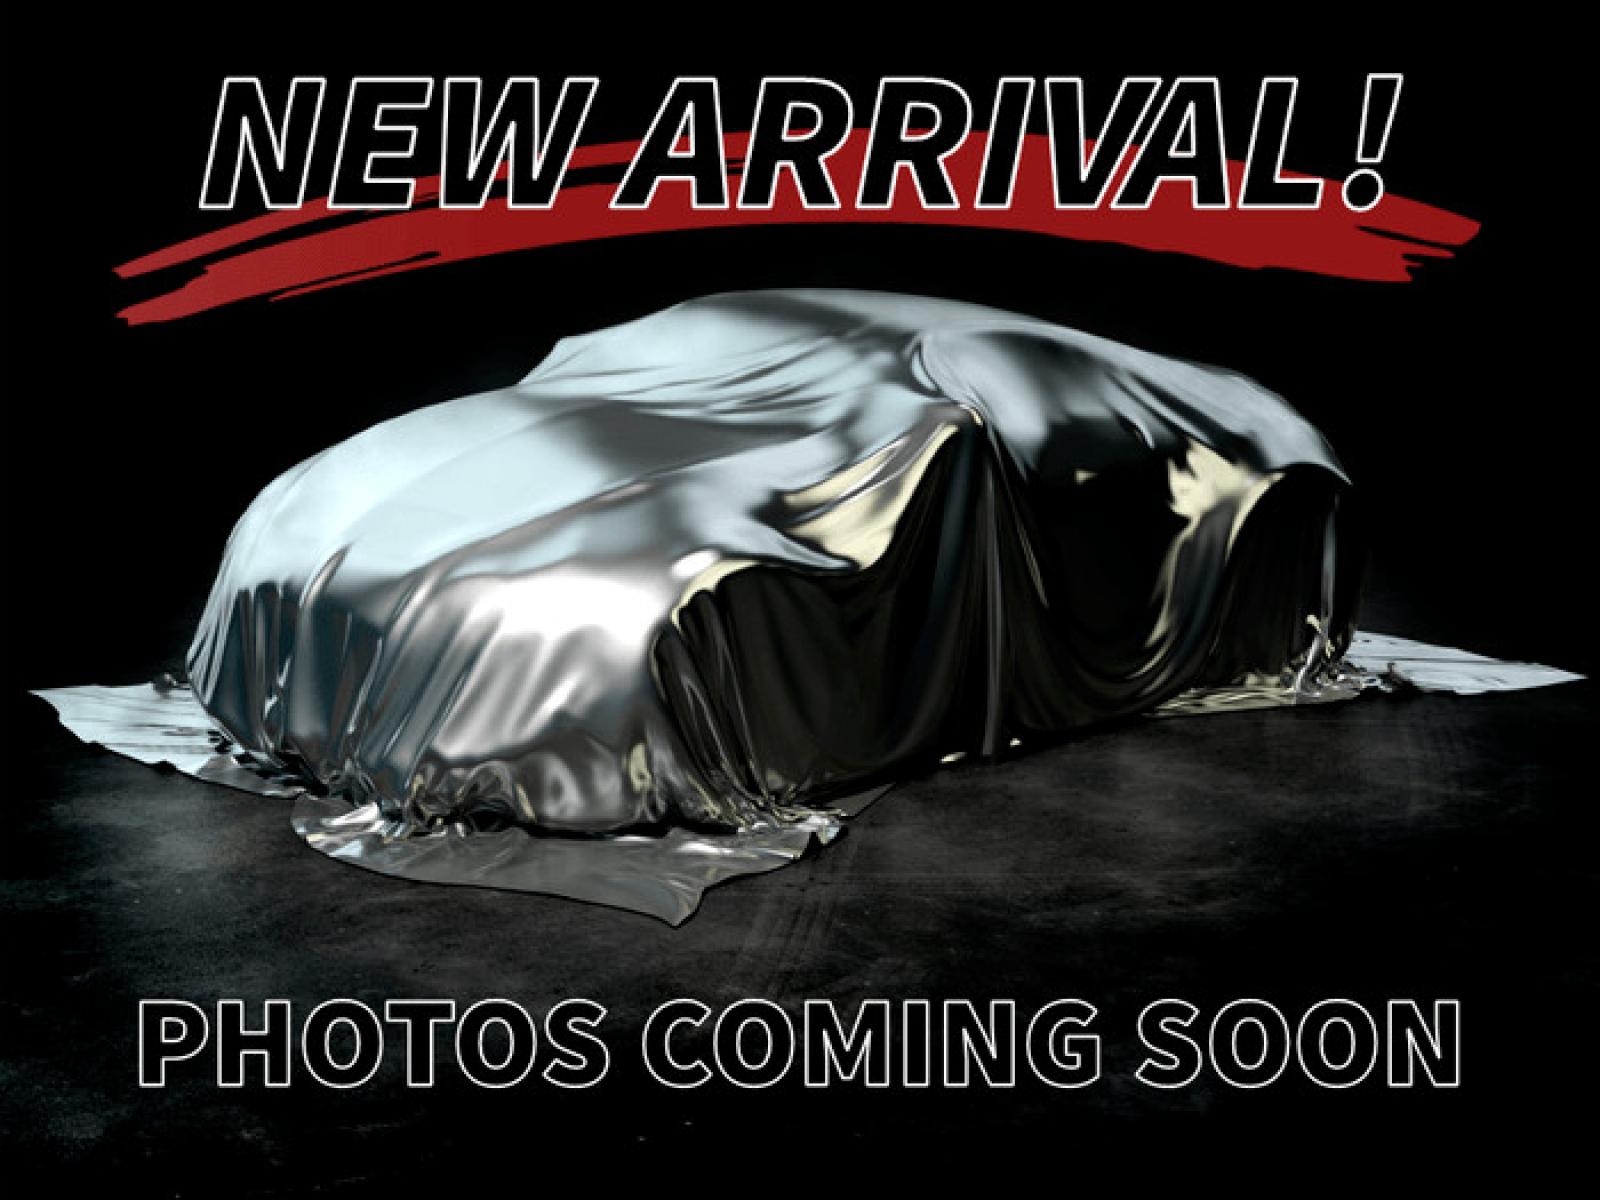 2012 Black /Brown Mercedes-Benz E350 Bluetec (WDDHF2EB0CA) , located at 3900 Bragg Blvd., Fayetteville, NC, 28303, (910) 868-3000, 35.081905, -78.943367 - T-8893-R - 2012 Mercedes-Benz E350 Bluetec WDDHF2EB0CA623775 - Photo #0